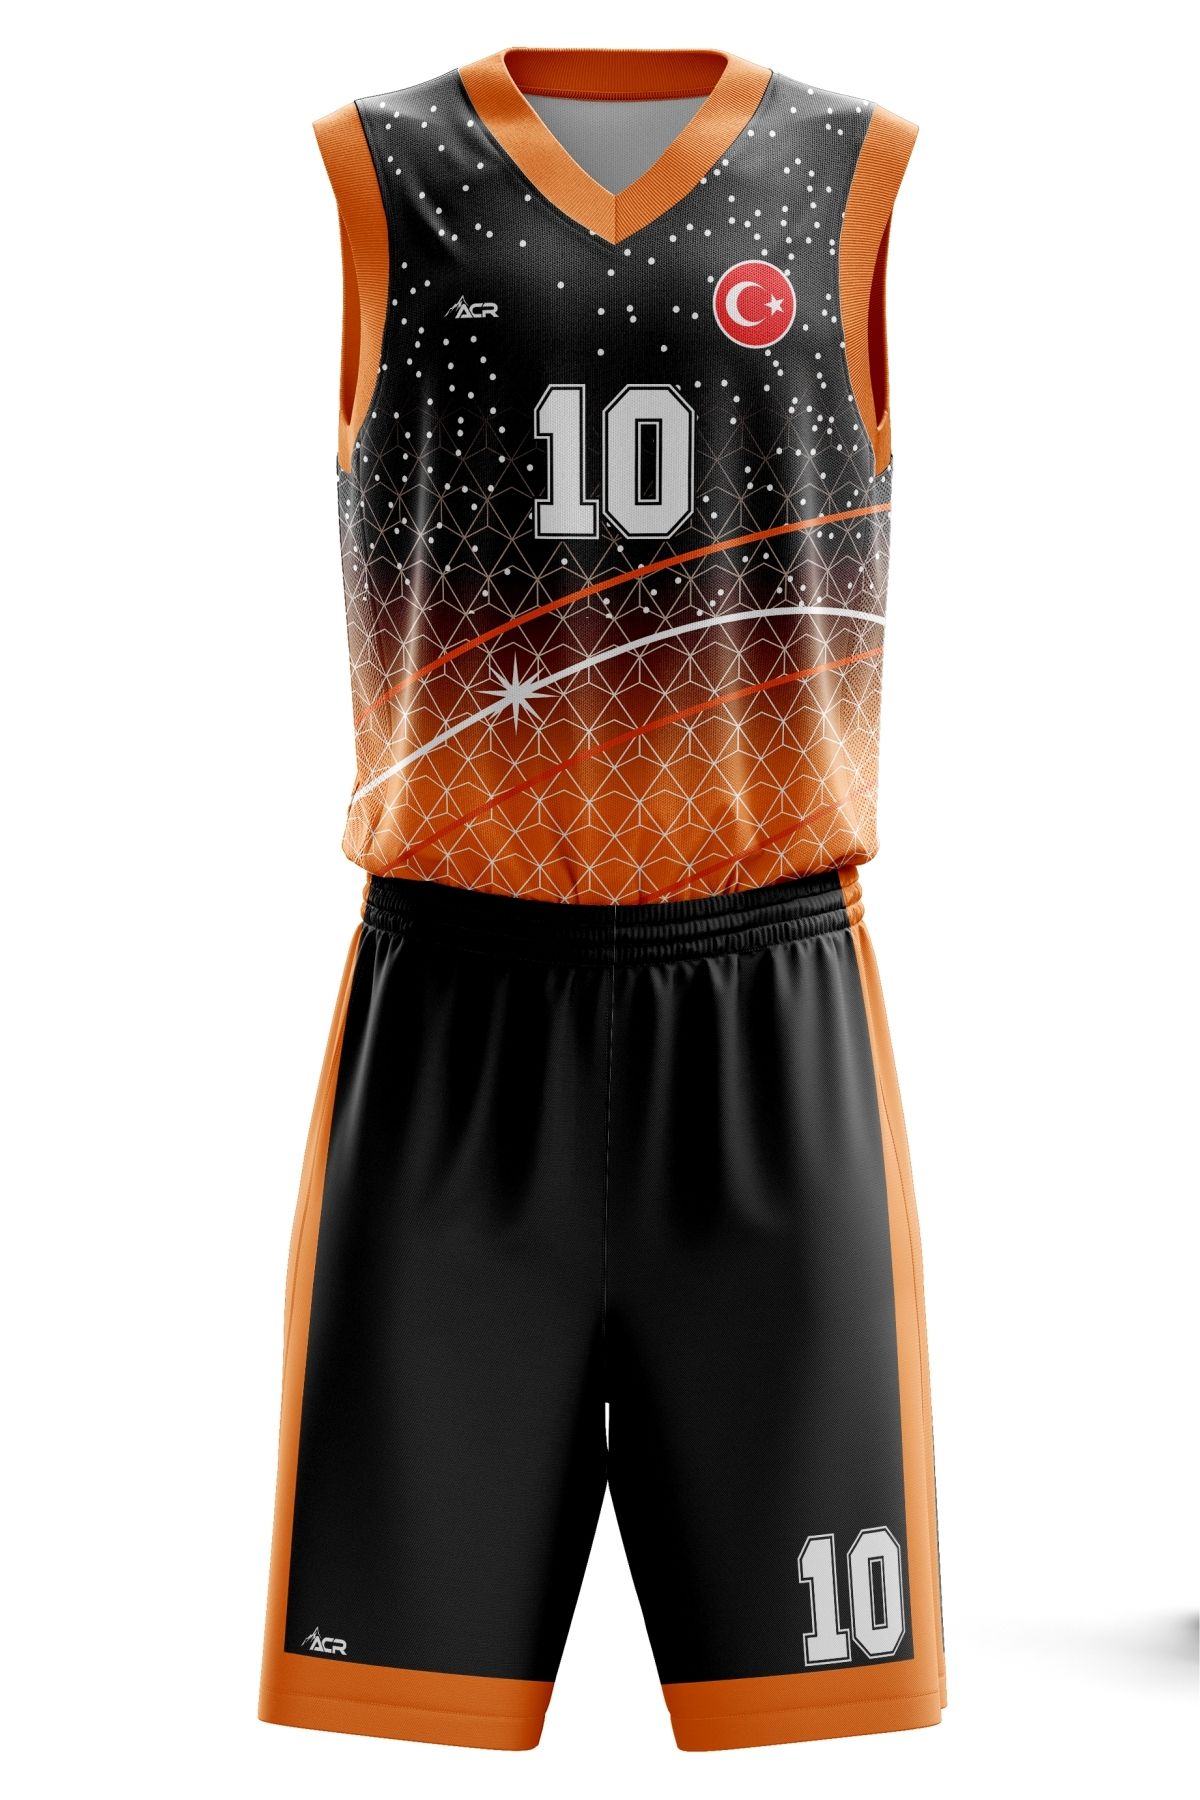 ACR Giyim Tekstil Forma Baskı Basketbol Forması  Kişiye Özel Basketbol Forması Alt Üst Takım Hediyelik Forma B2402 Turuncu Siyah